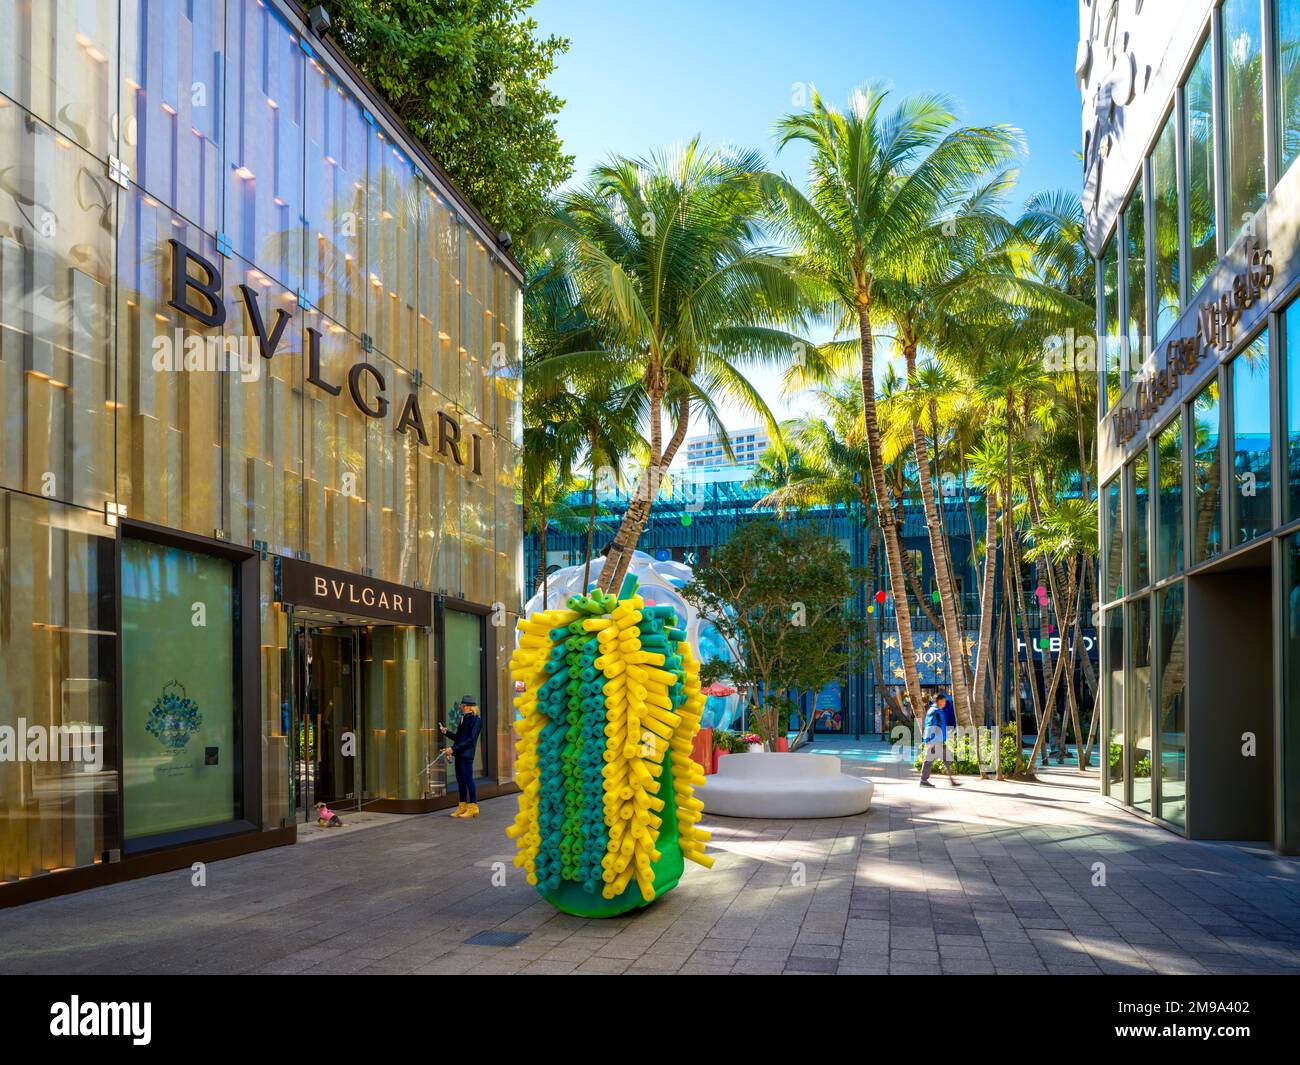 Miami Design District - SB Architects